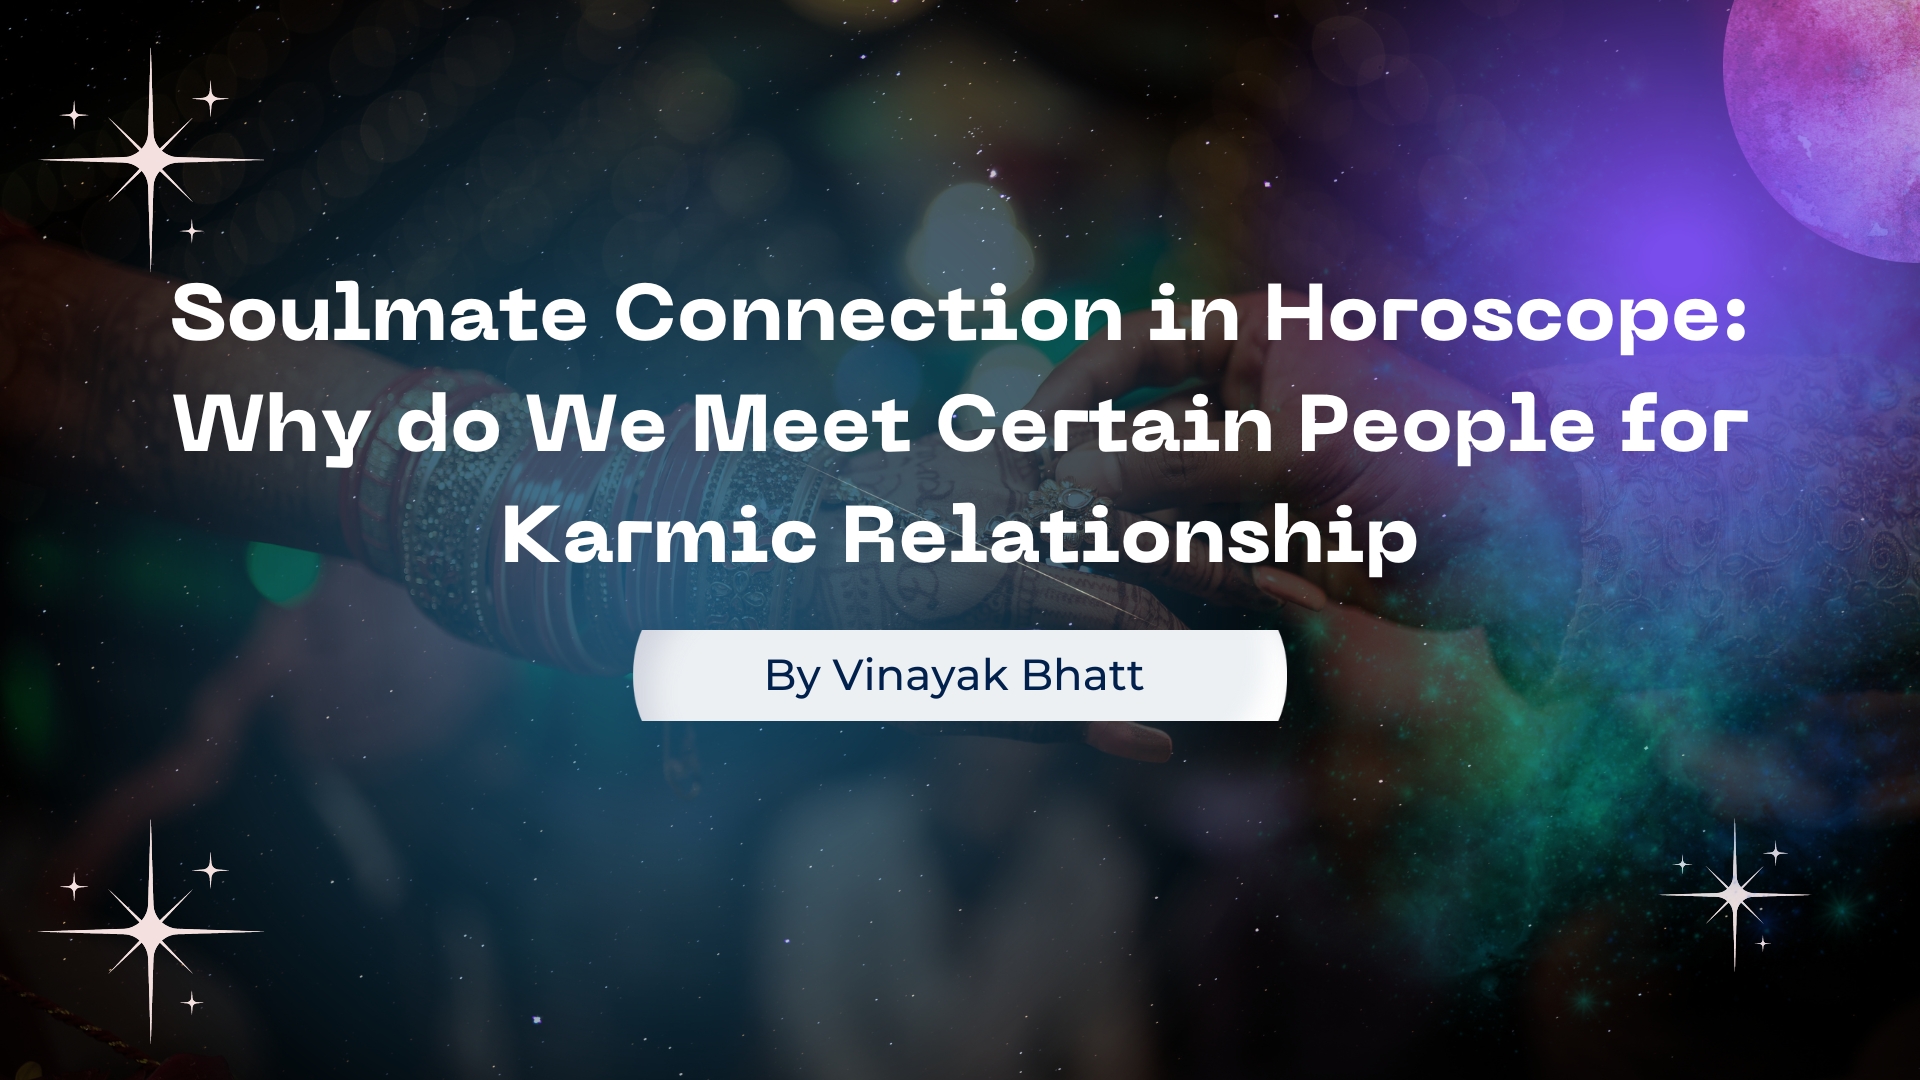 Karmic Relationship